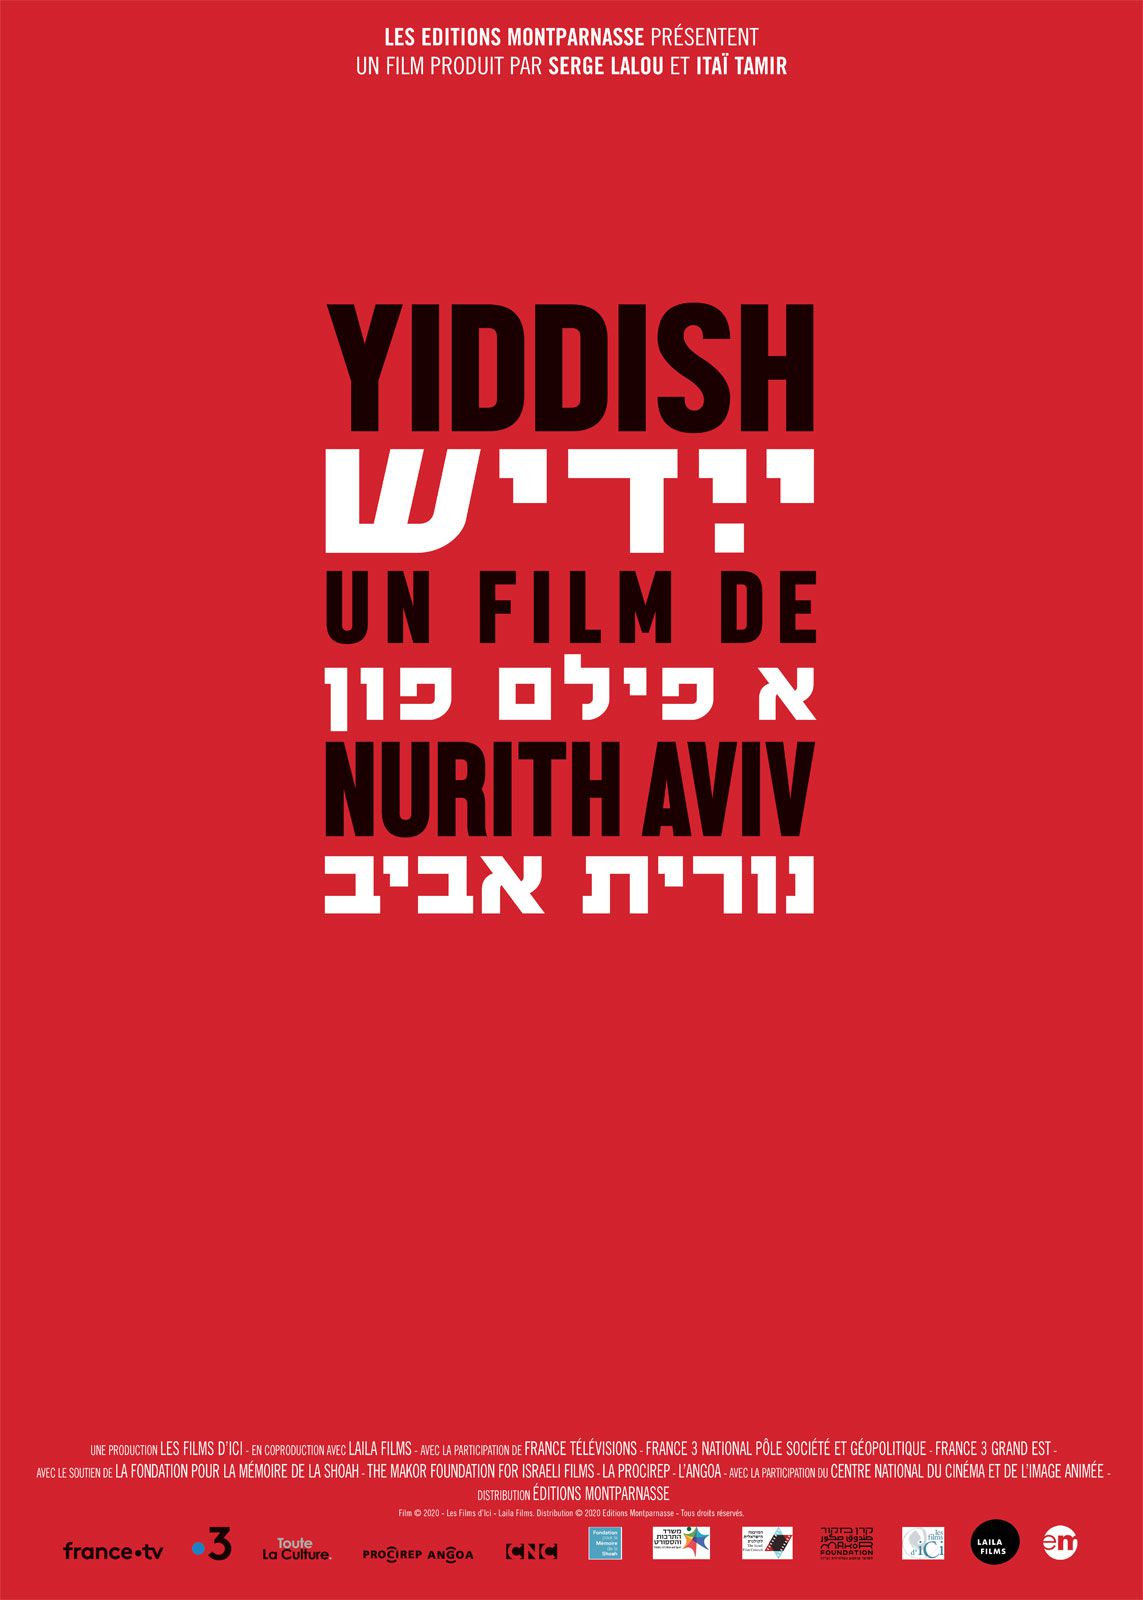 Yiddish - Documentaire (2020)